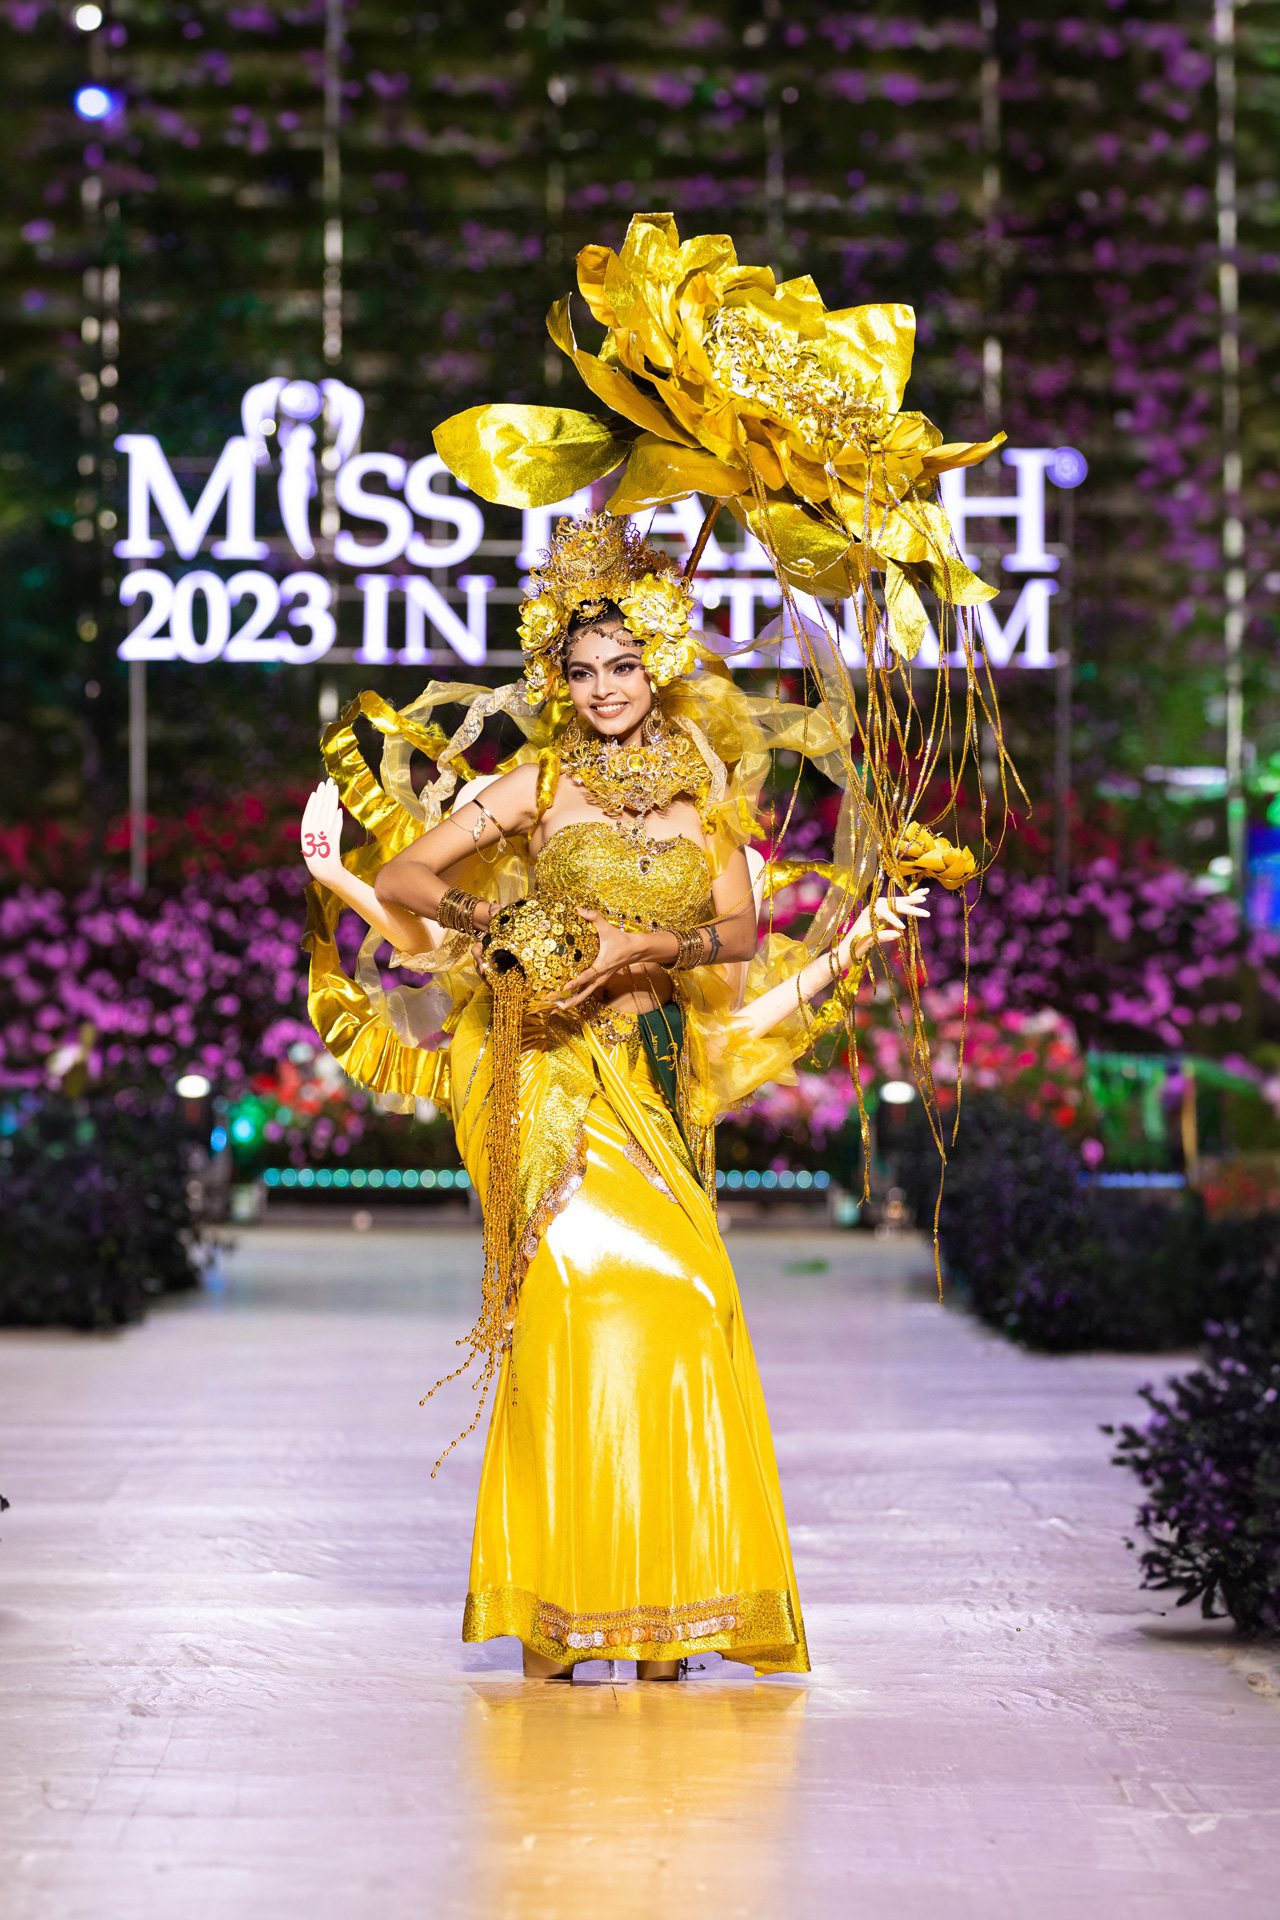  Trang phục của thí sinh Miss Earth gắn với ý nghĩa bảo vệ hành tinh xanh.